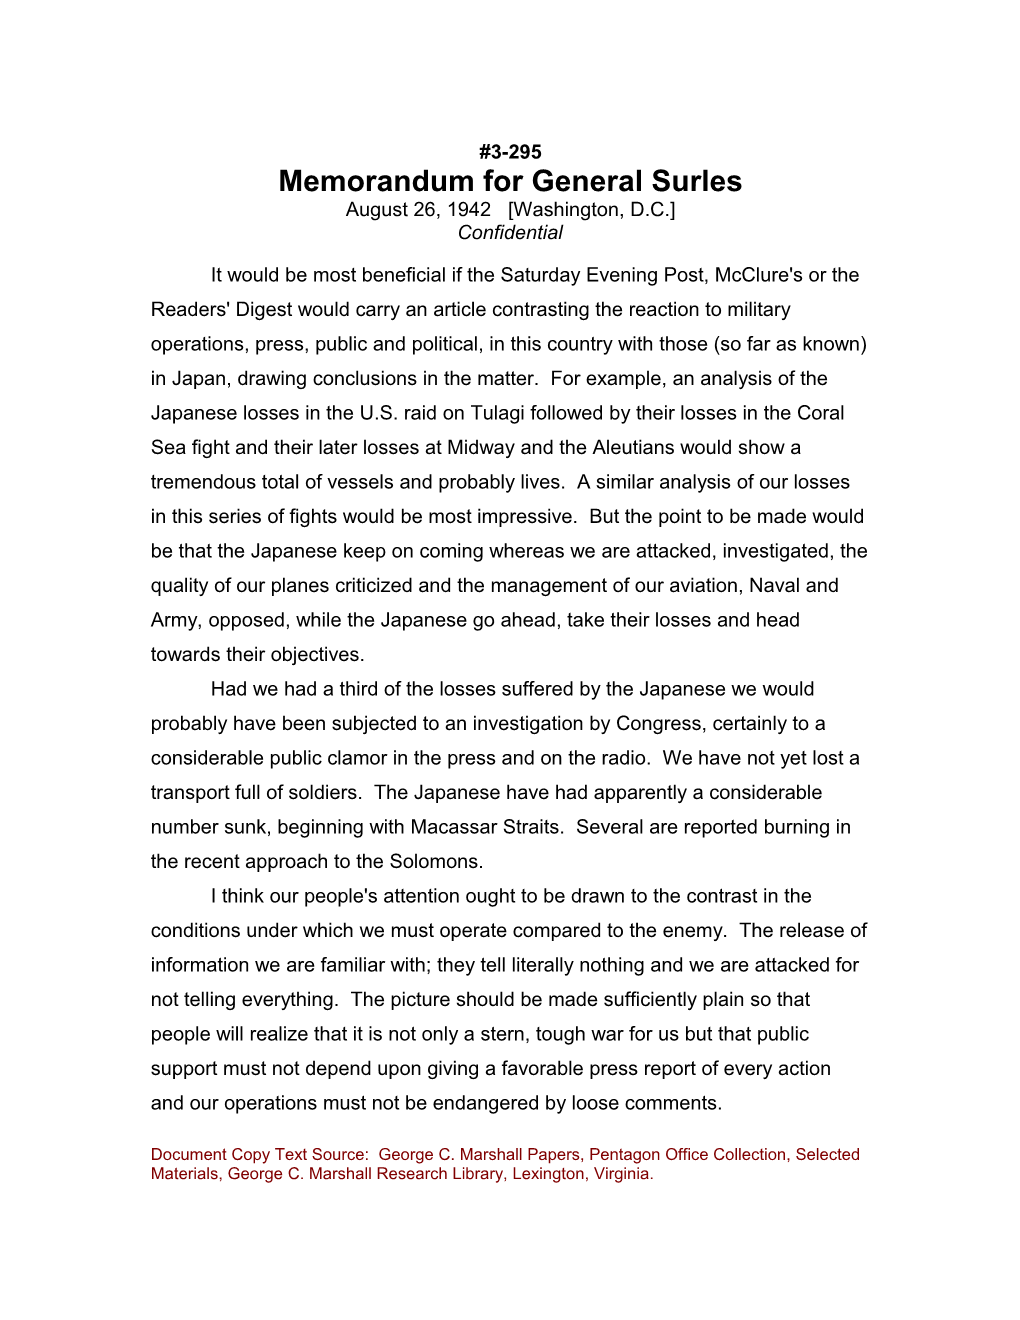 Memorandum for General Surles